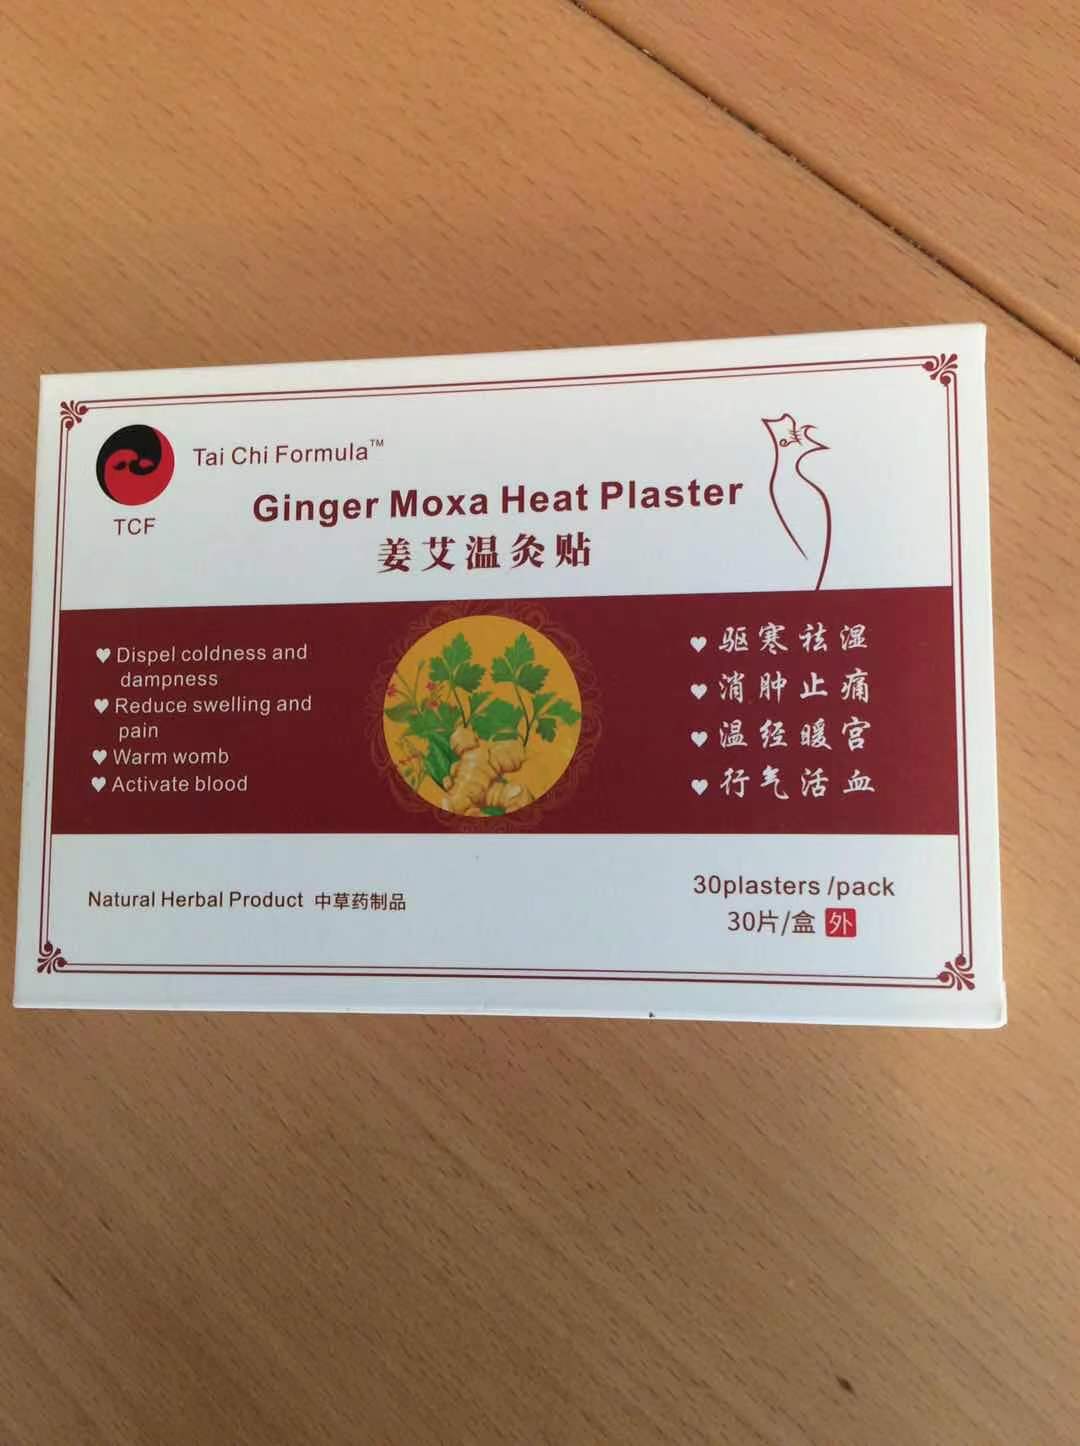 Ginger Moxa Heat Plaster